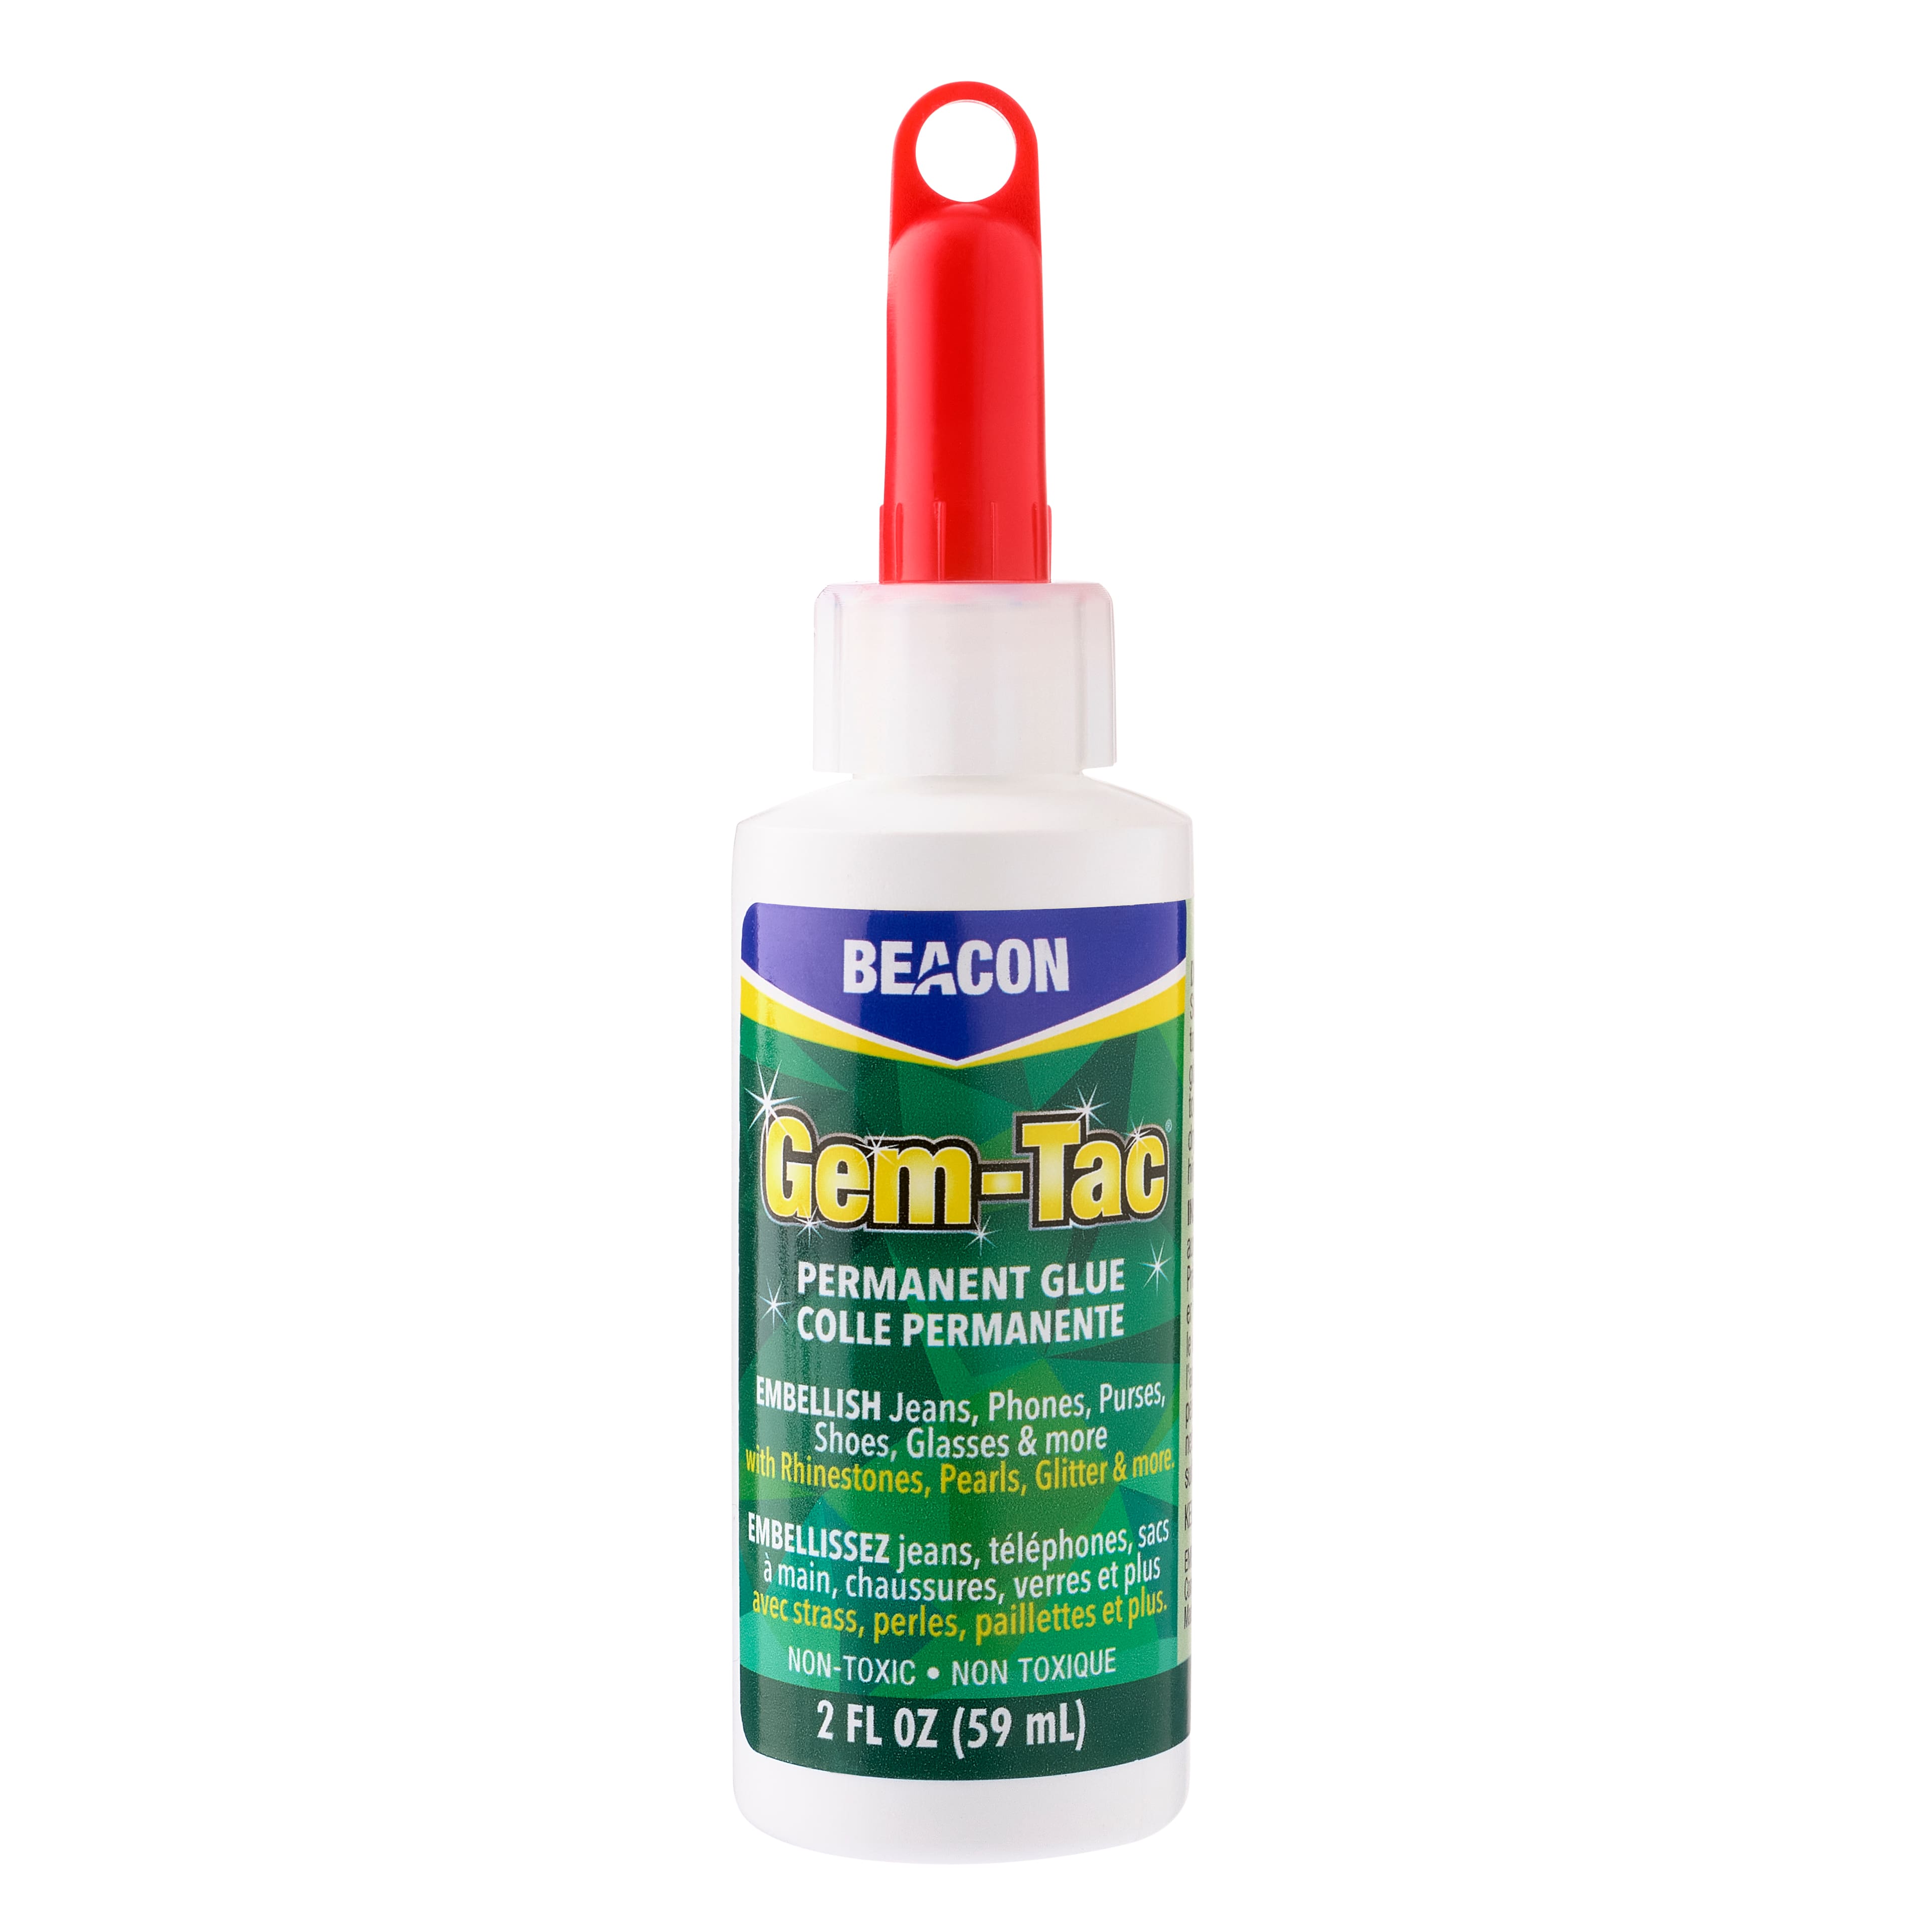 Beacon Gem-Tac 2oz. Permanent Rhinestone Glue